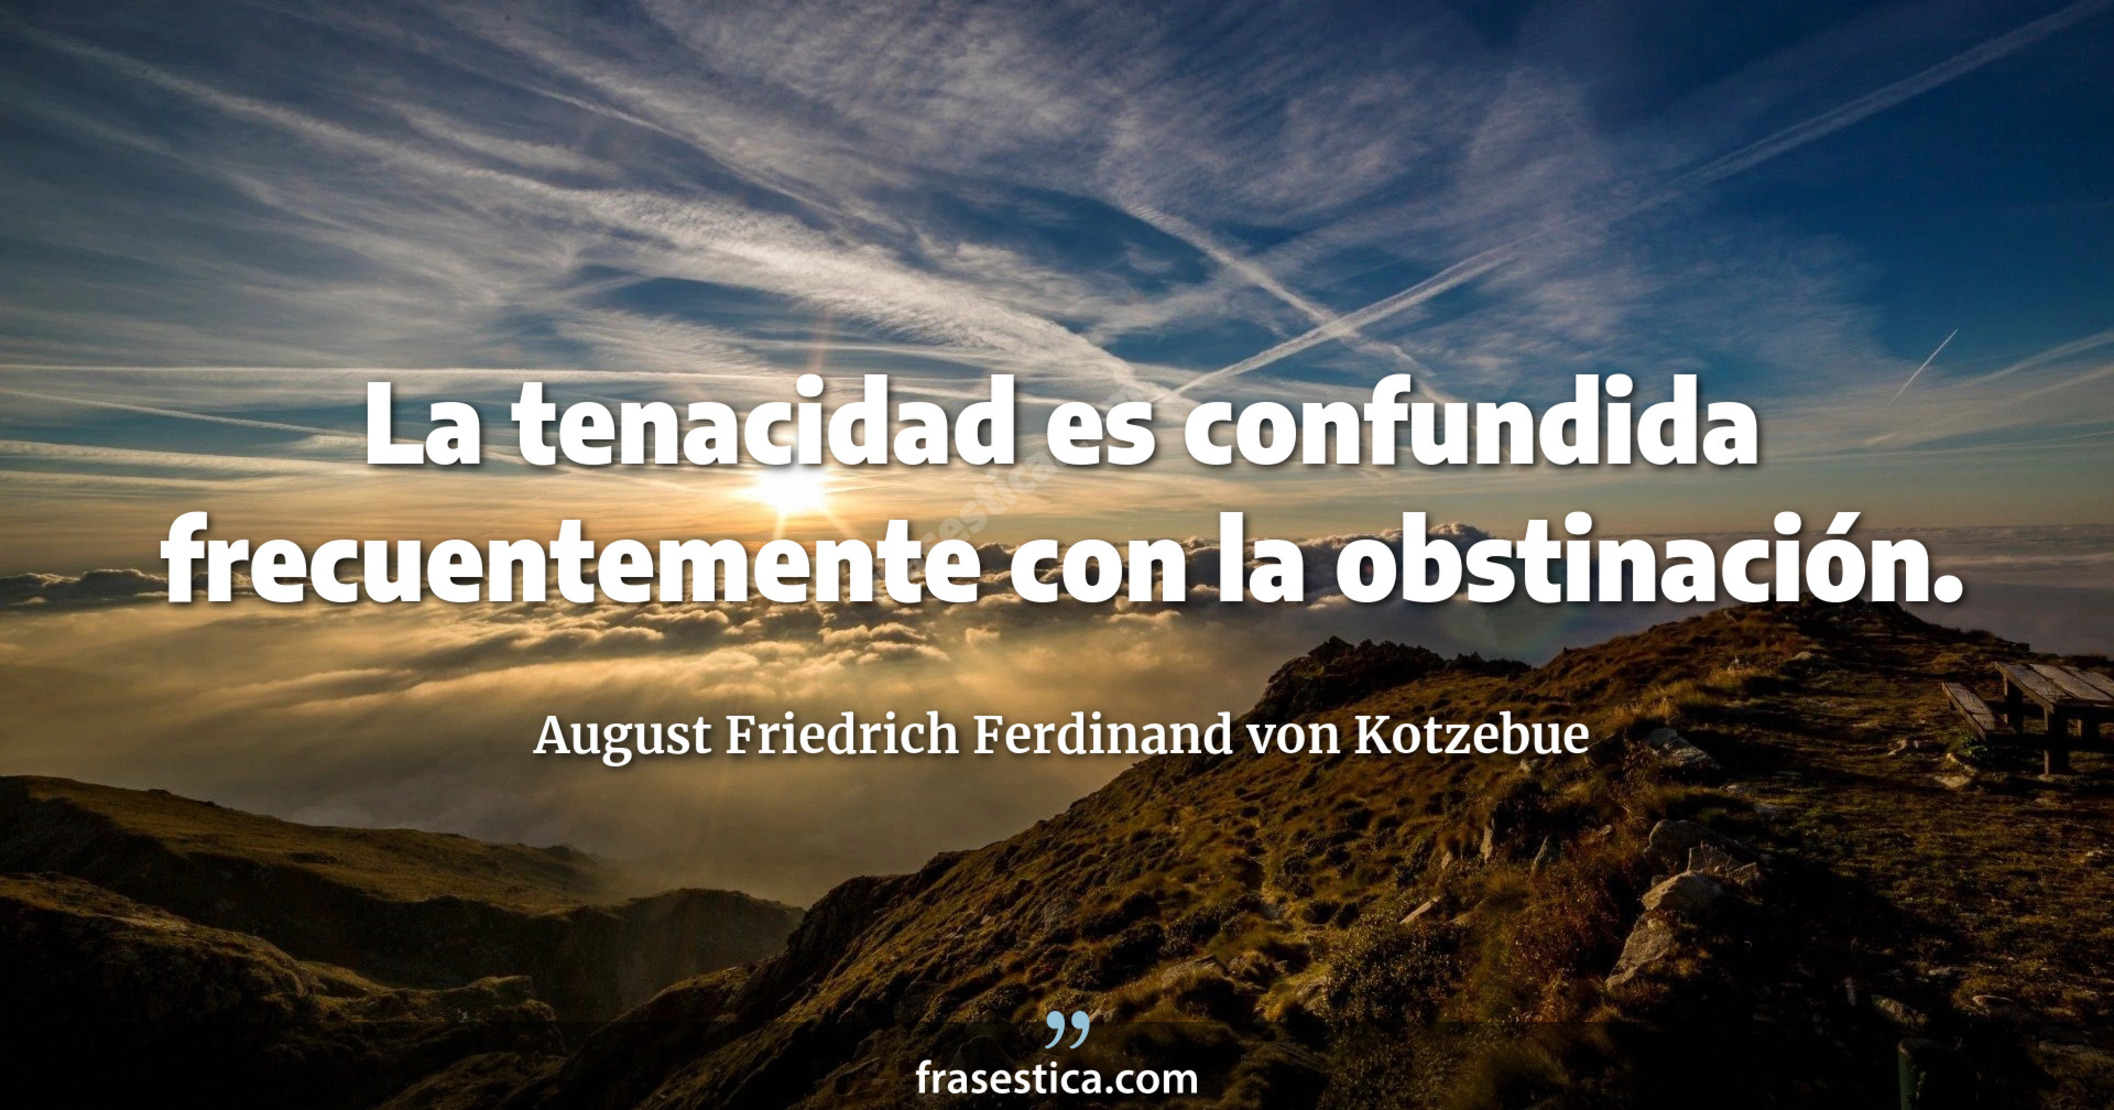 La tenacidad es confundida frecuentemente con la obstinación. - August Friedrich Ferdinand von Kotzebue